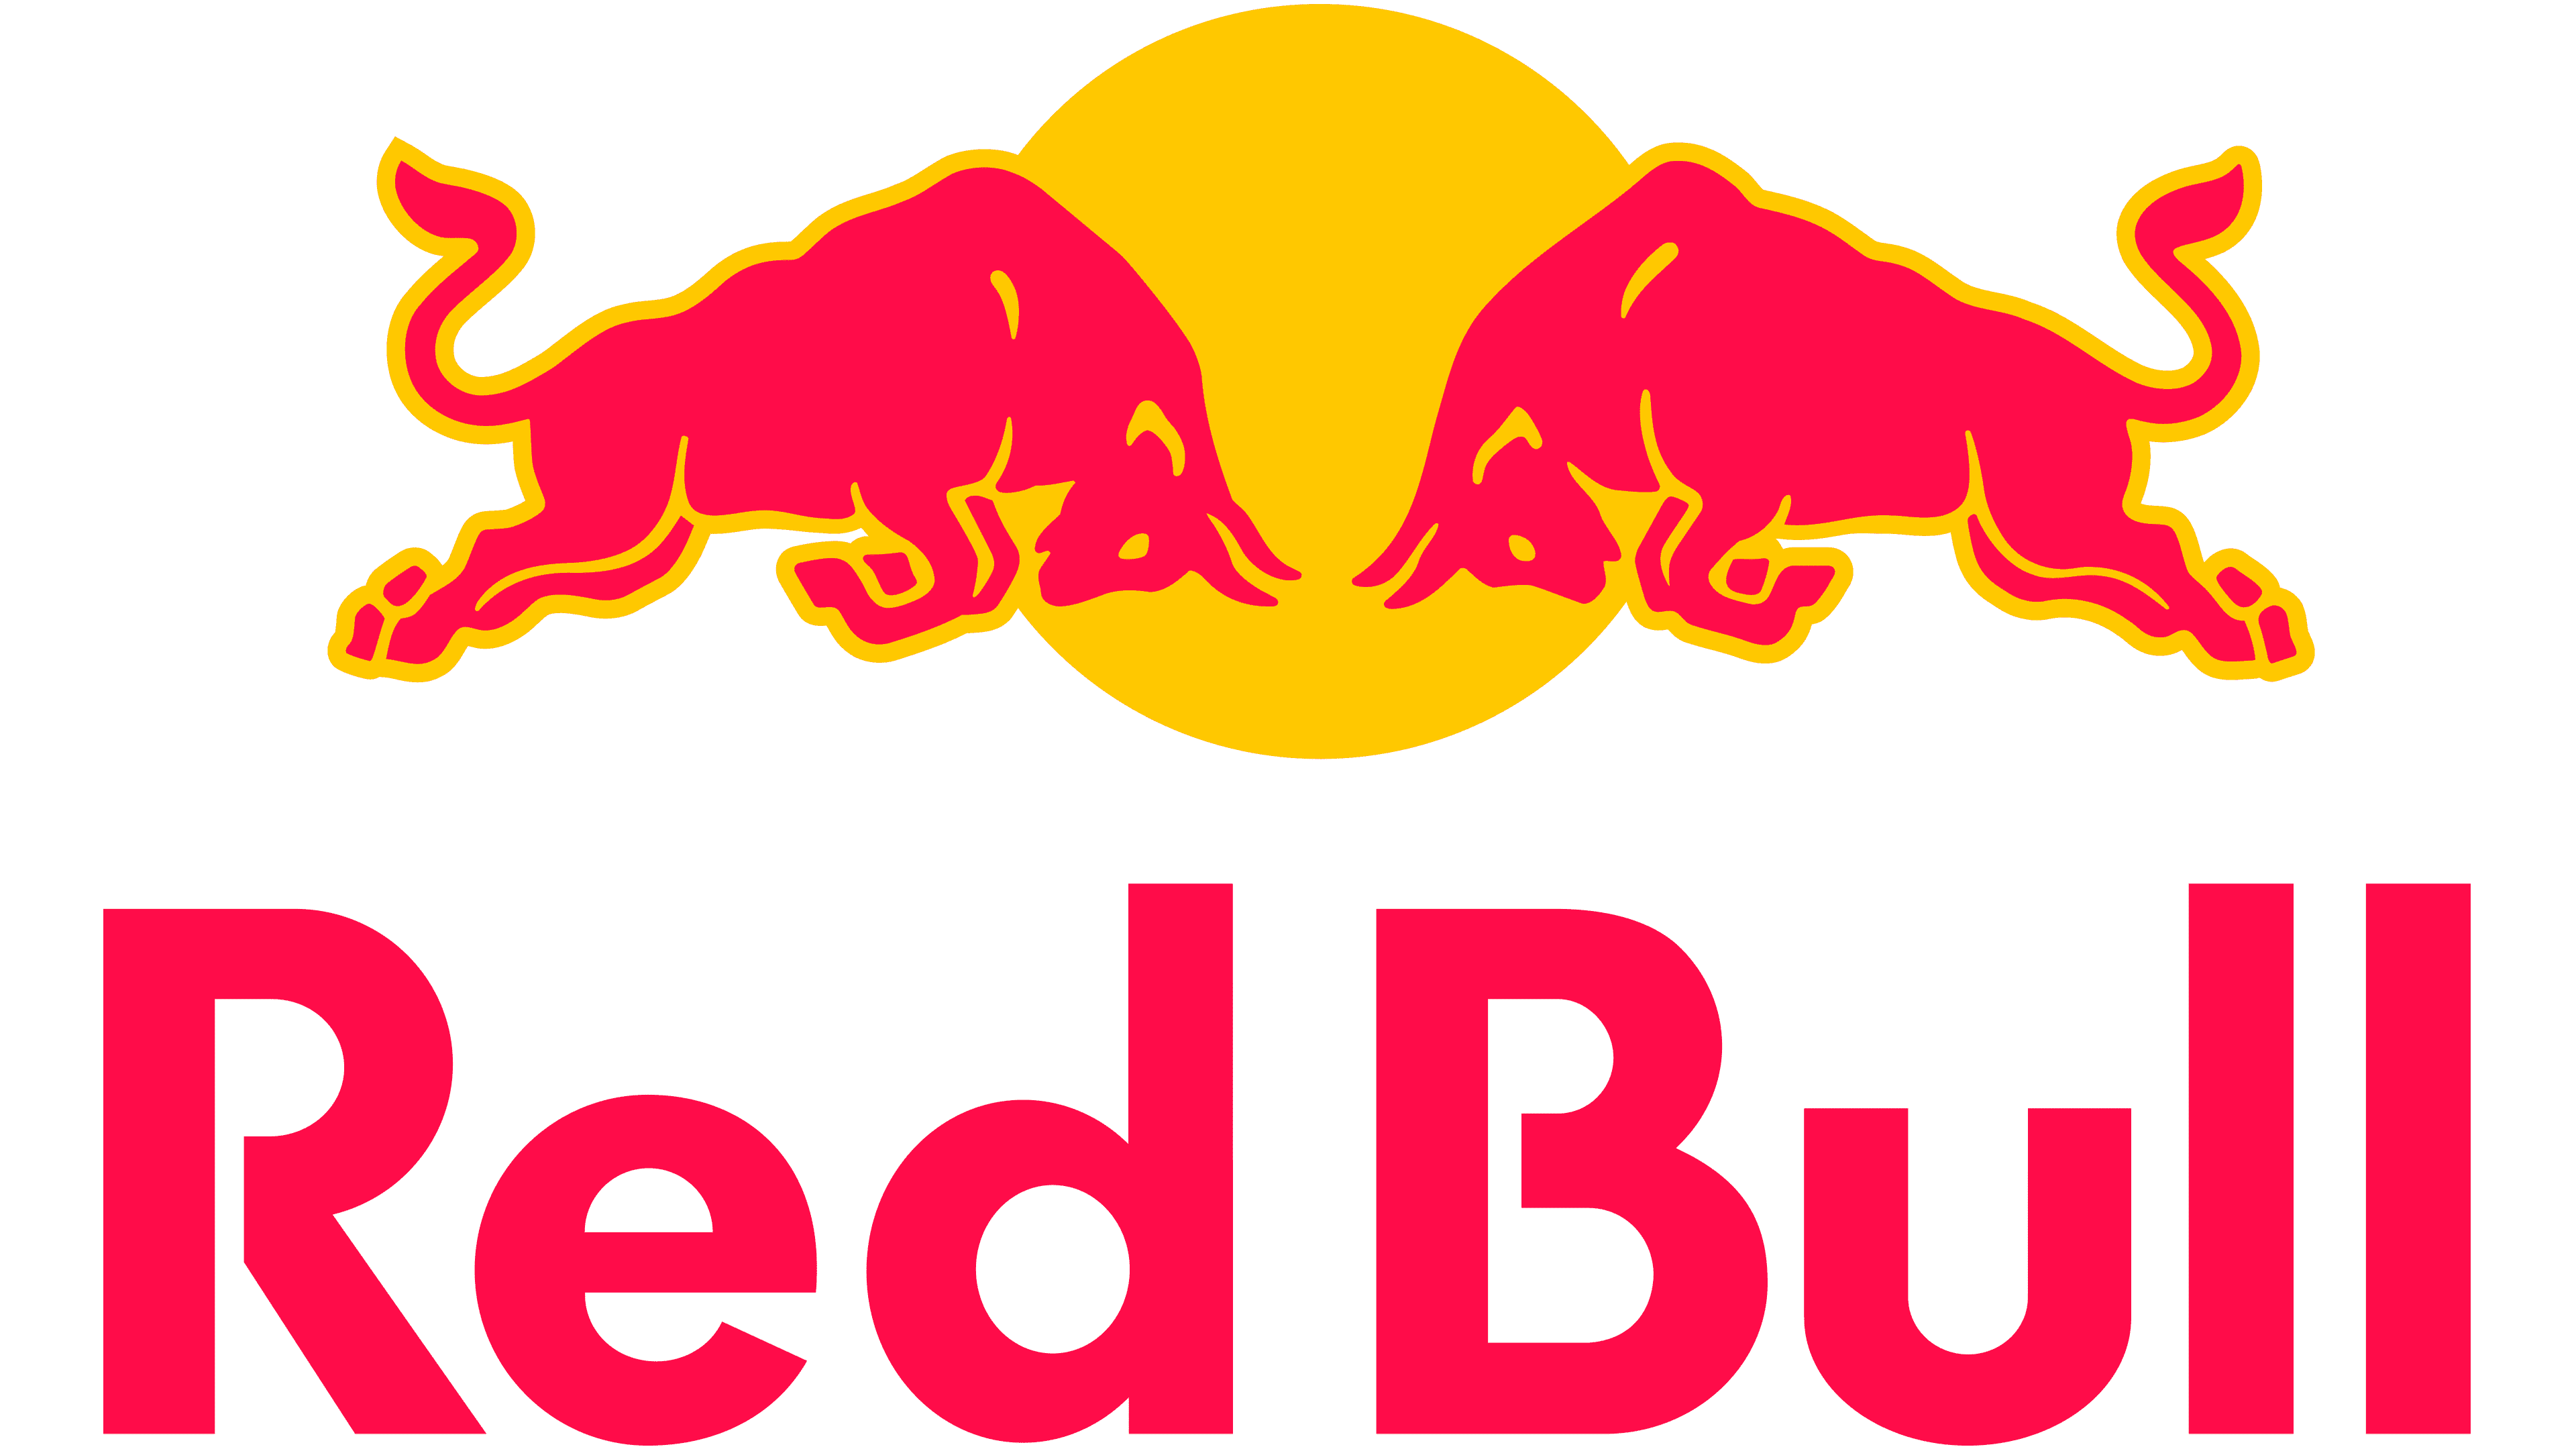 original red bull 1987